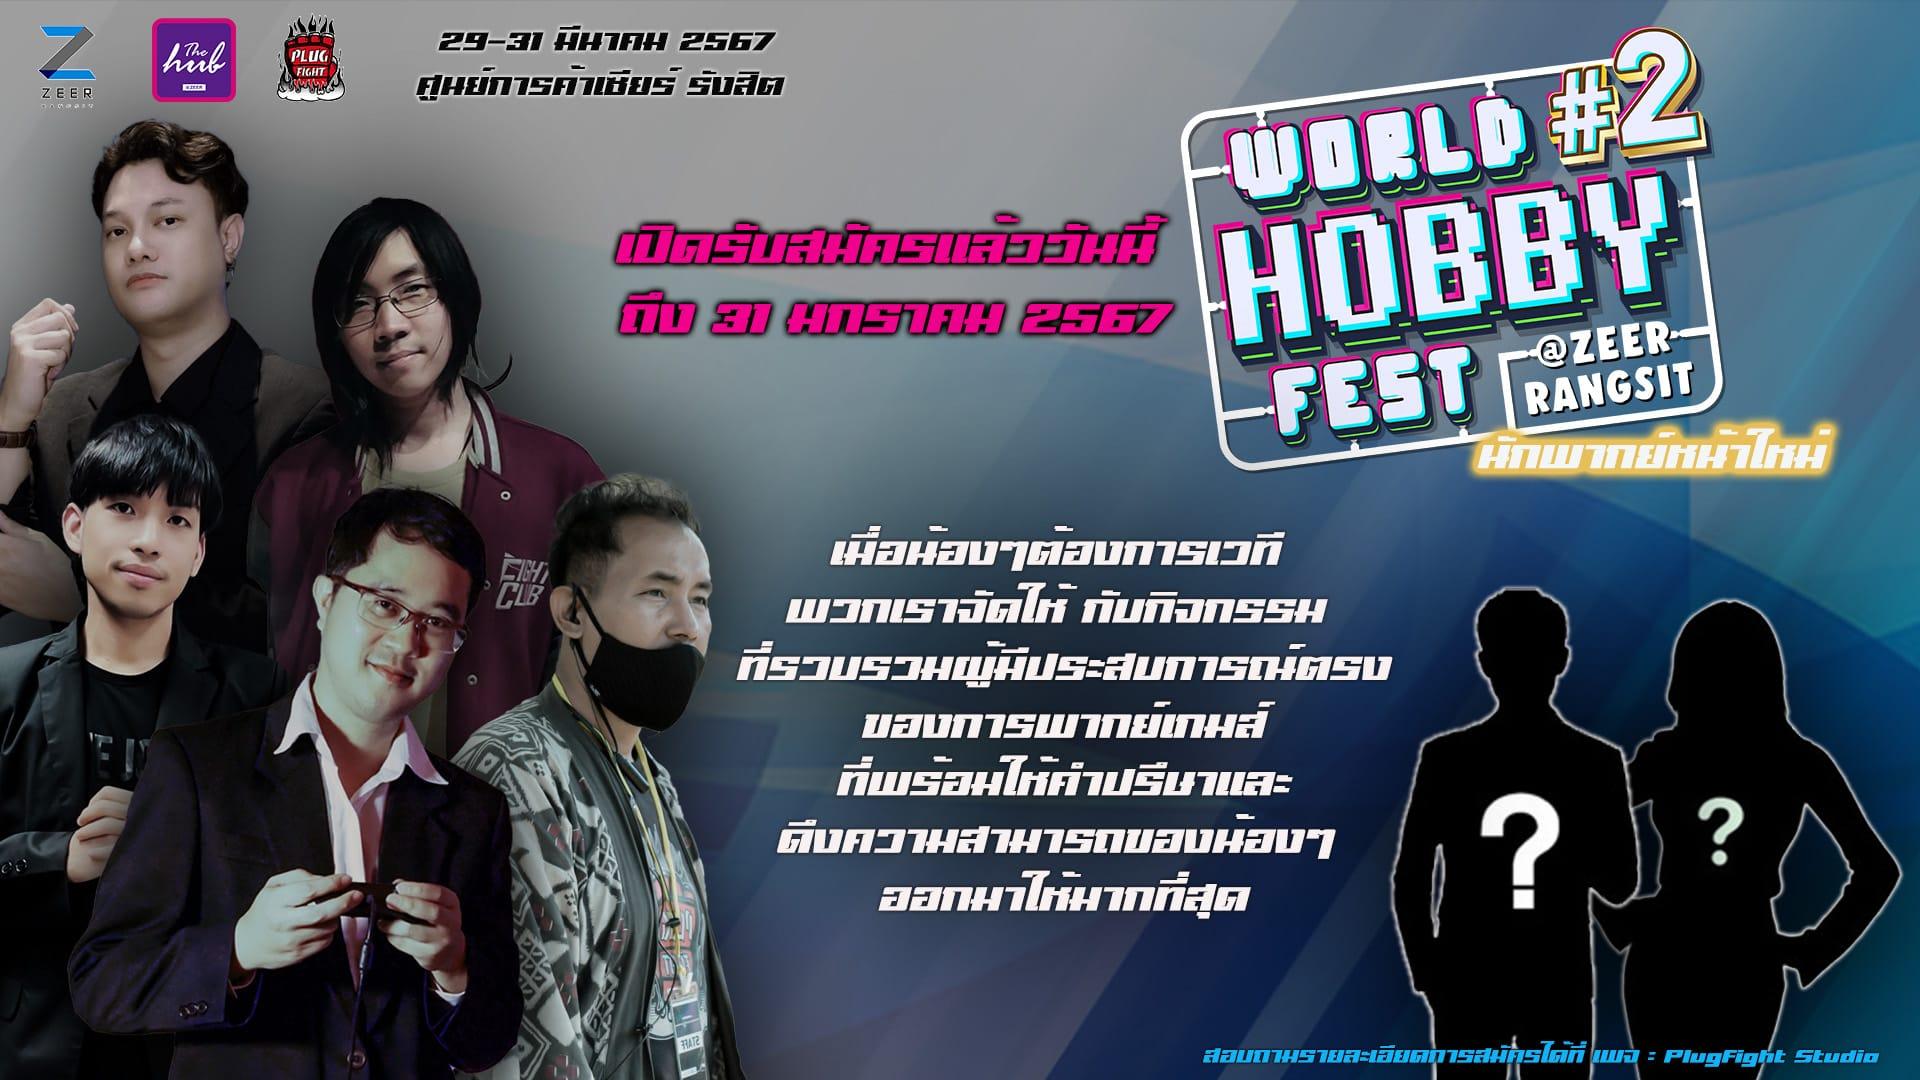 กิจกรรม ท้าทายคนวัยมันส์กับ Event "World Hobby Fest 2 นักพากย์ หน้าใหม่"  วันที่ 29-31 มีนาคมนี้ ในงาน "World Hobby Fest 2" ณ Zeer Rangsit